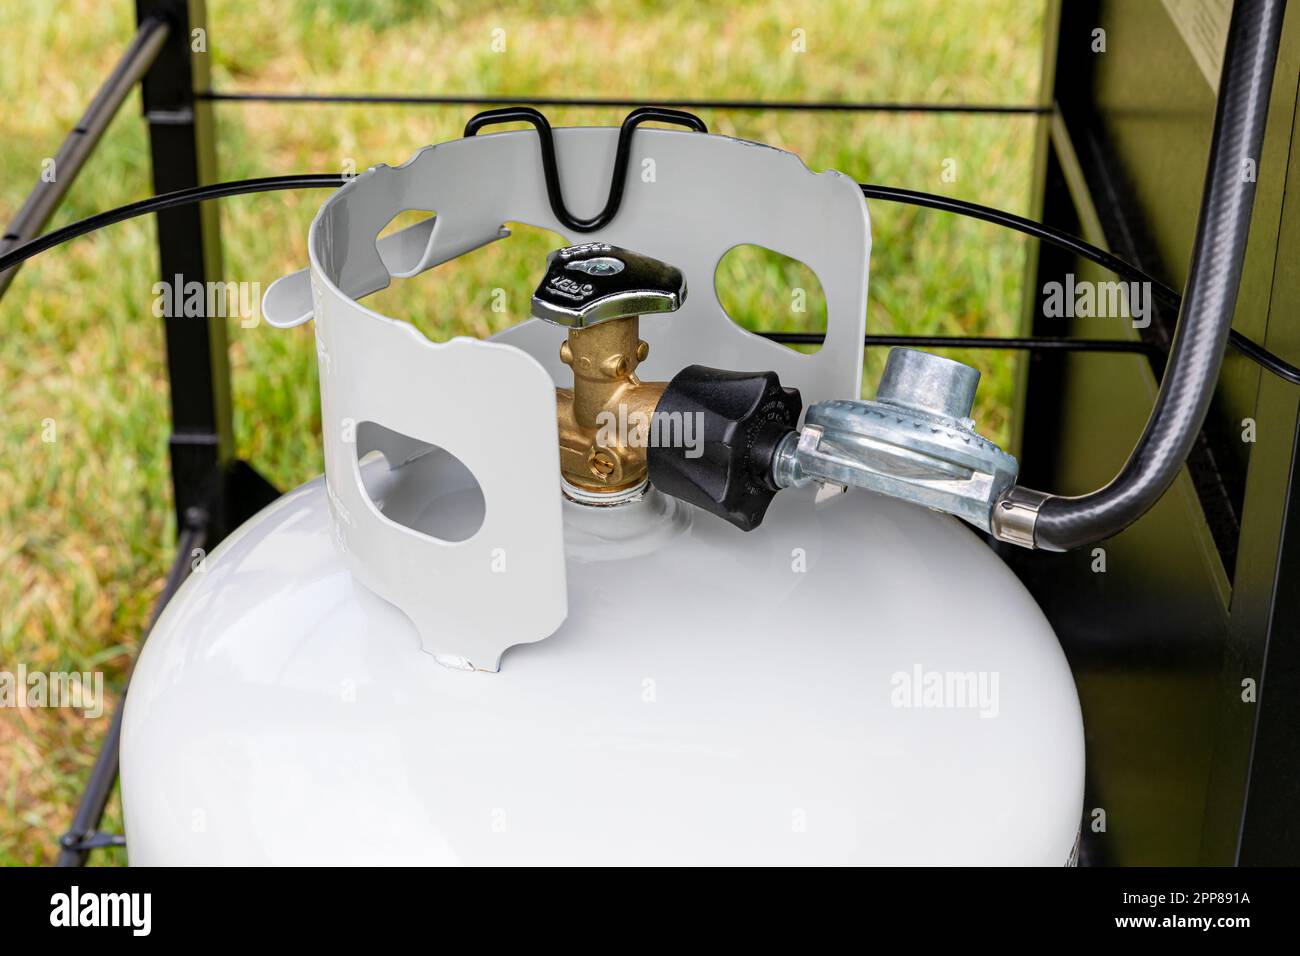 Bouteille de gaz propane avec flexible et régulateur pour barbecue. Sécurité au gril, inspection et stockage de l'équipement GPL Banque D'Images